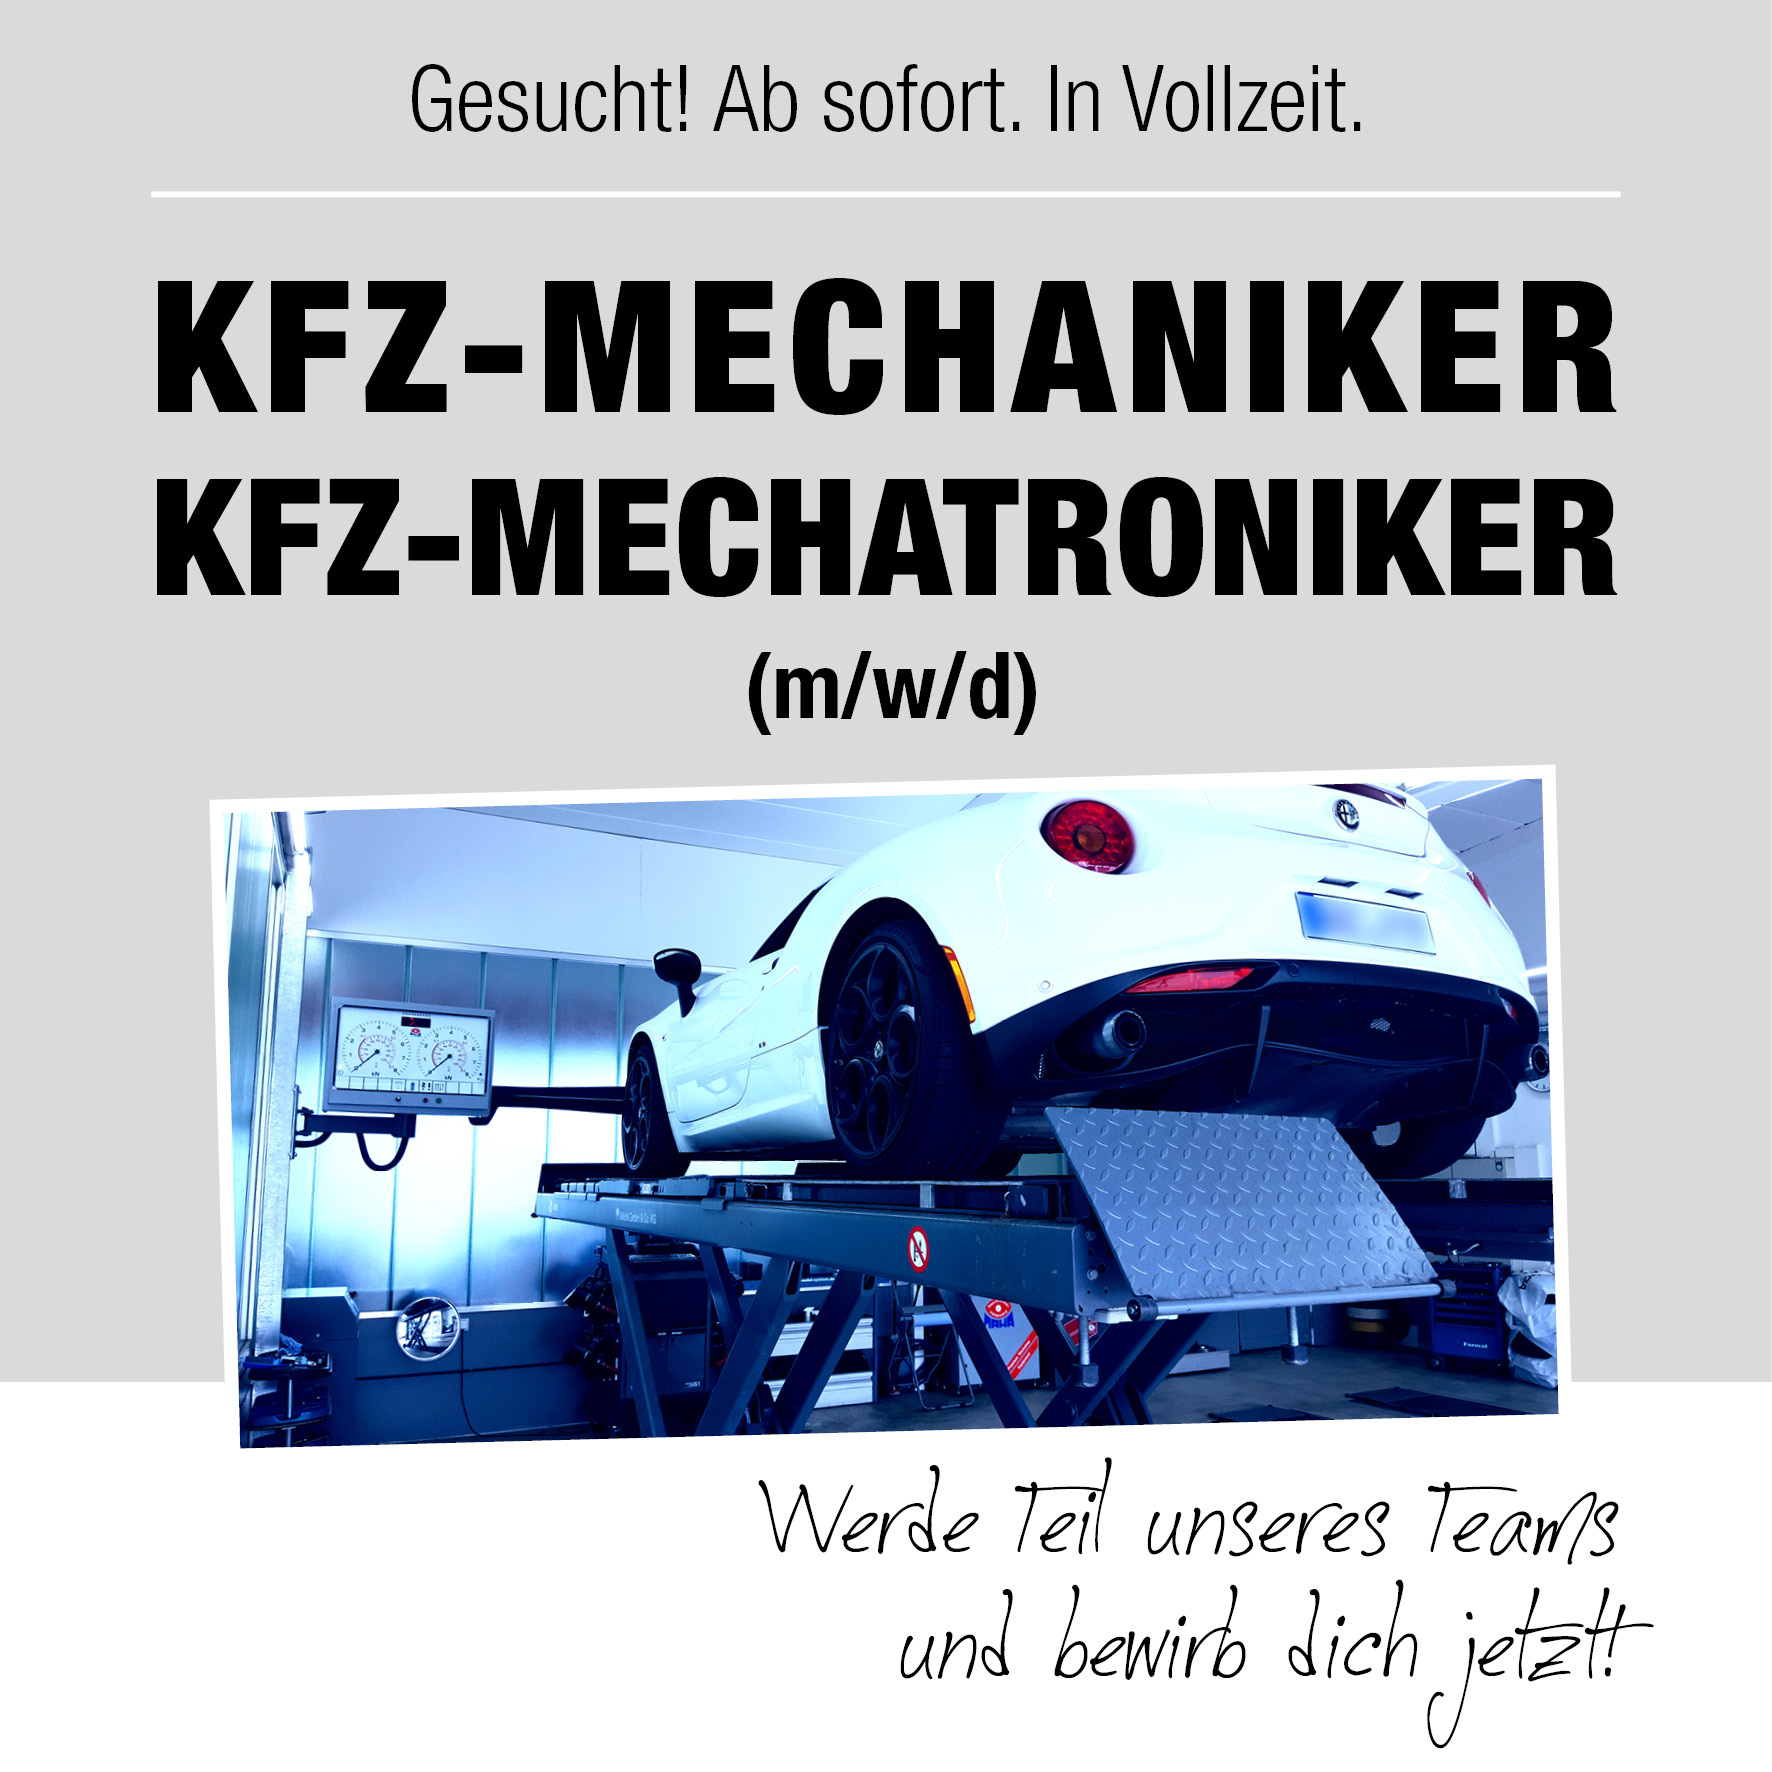 Kfz-Mechaniker / Kfz-Mechatroniker (m/w/d) gesucht